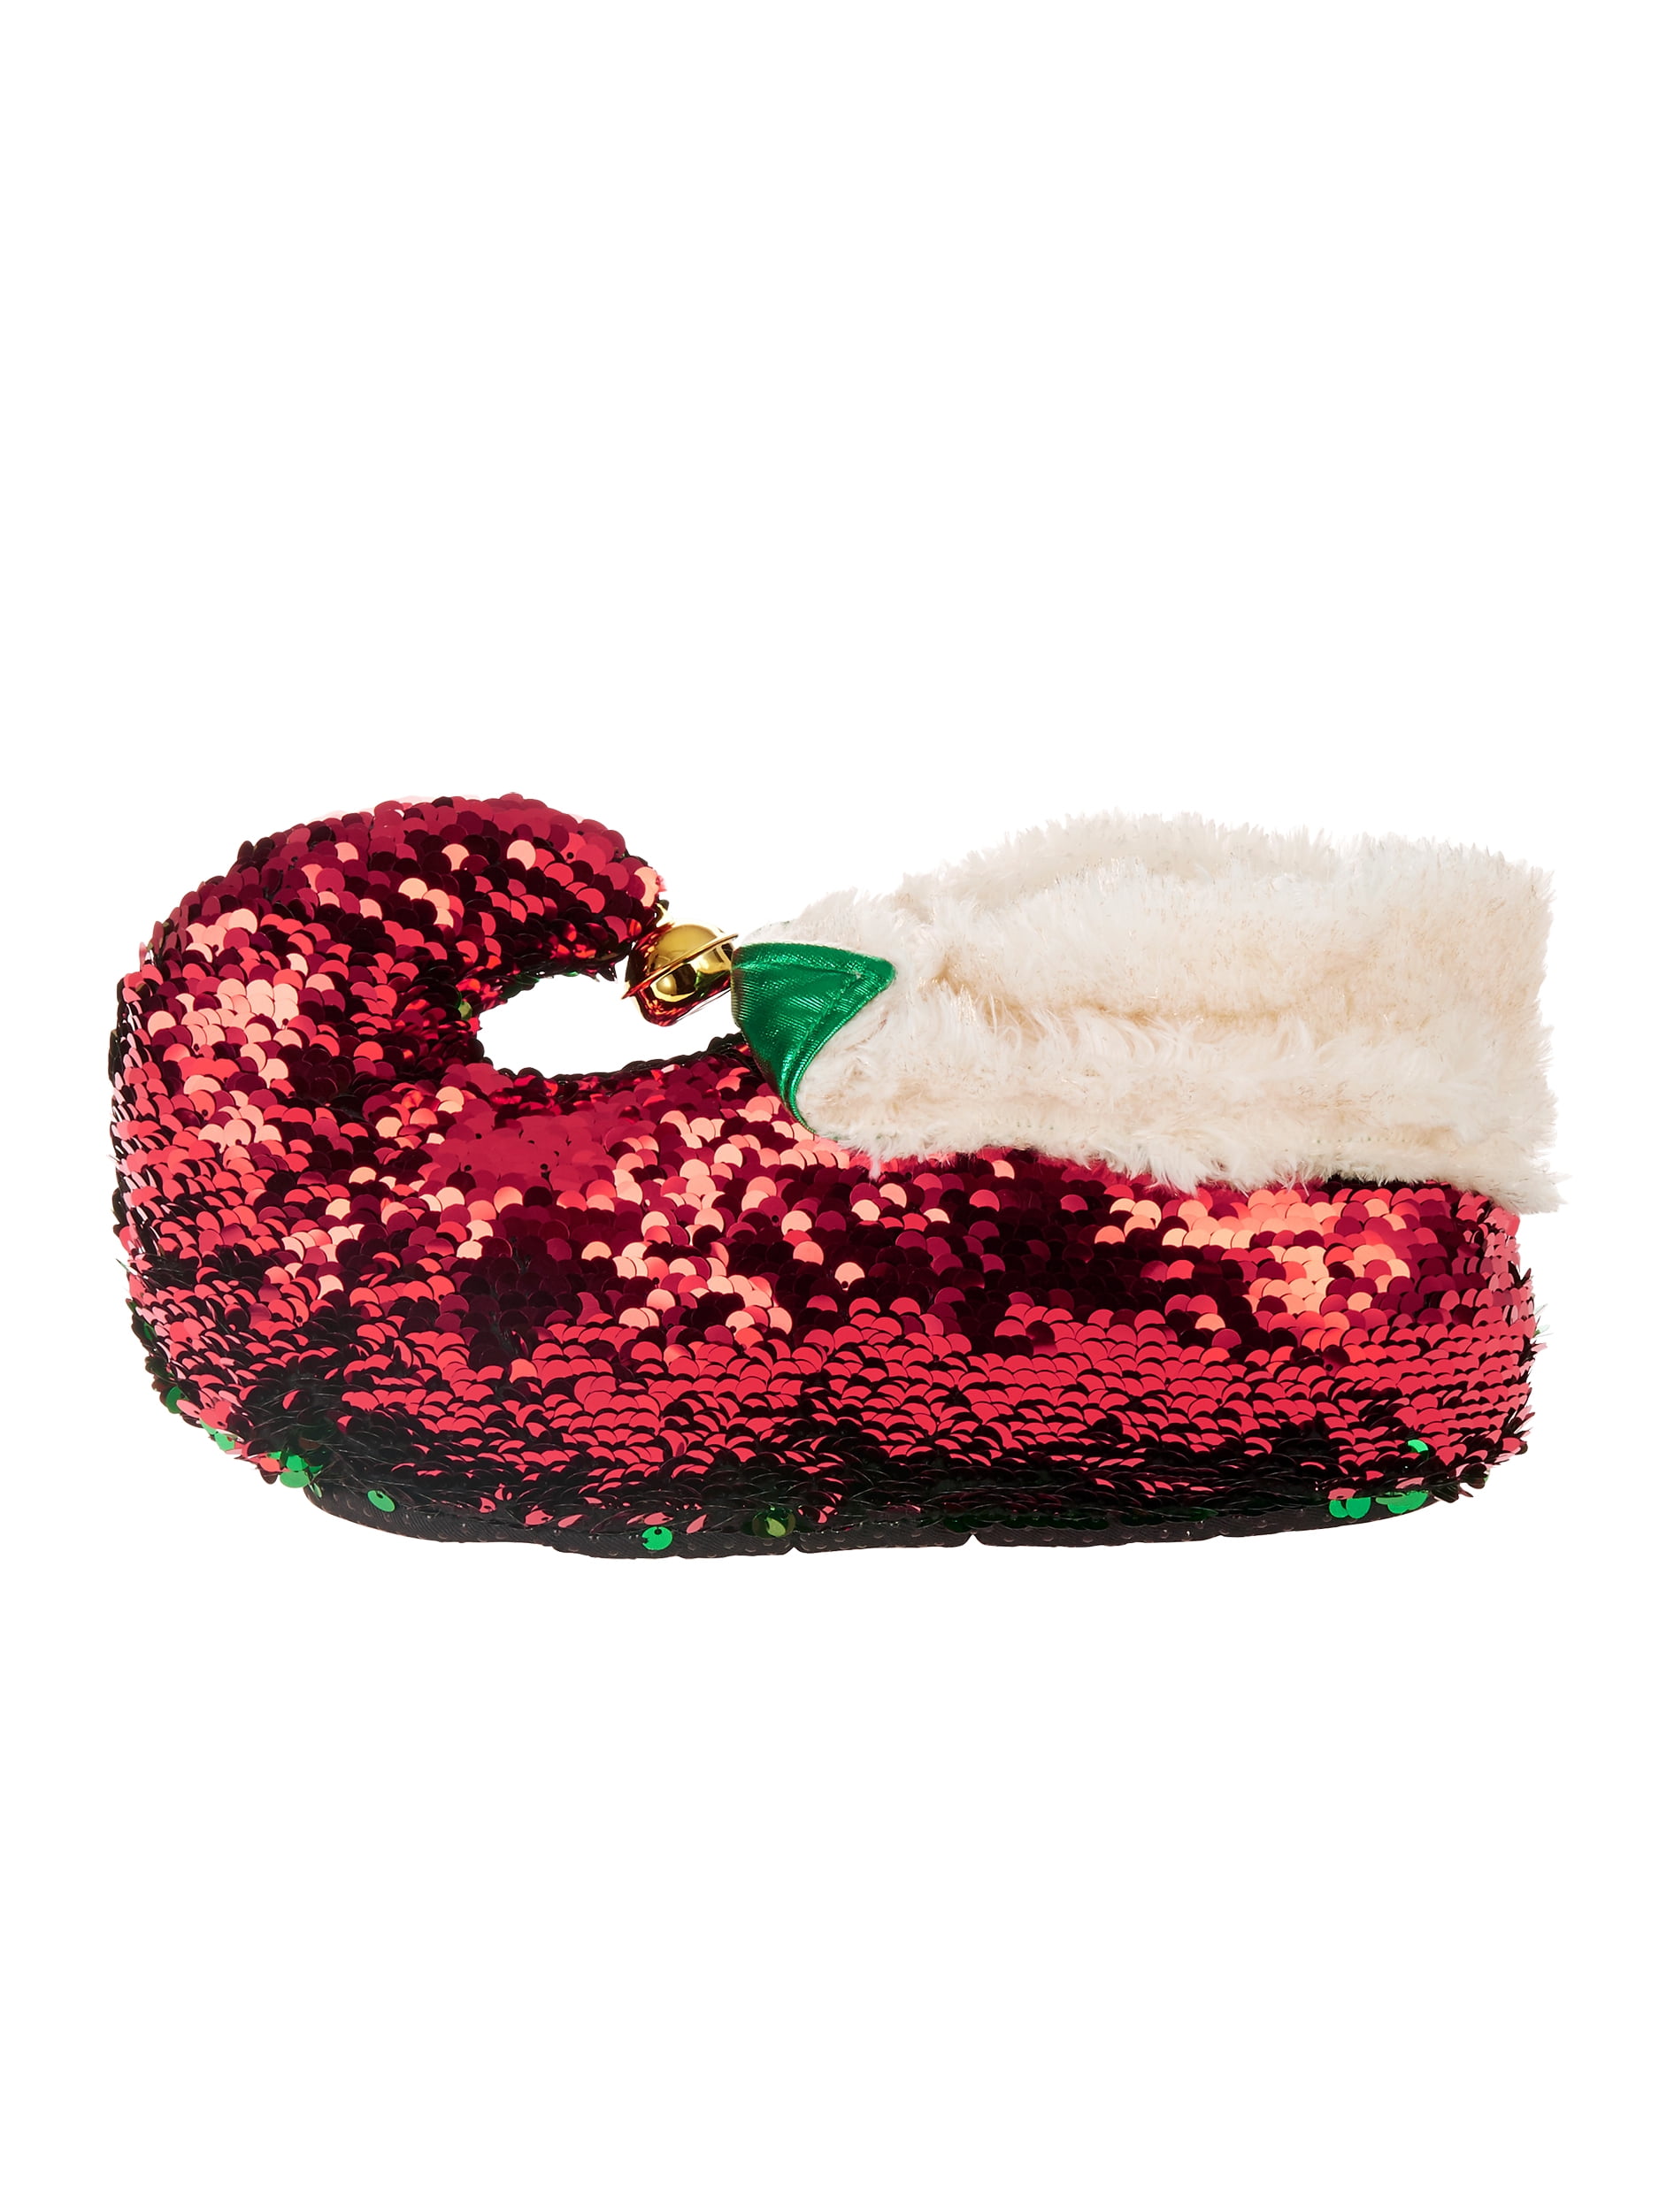 elf slippers walmart